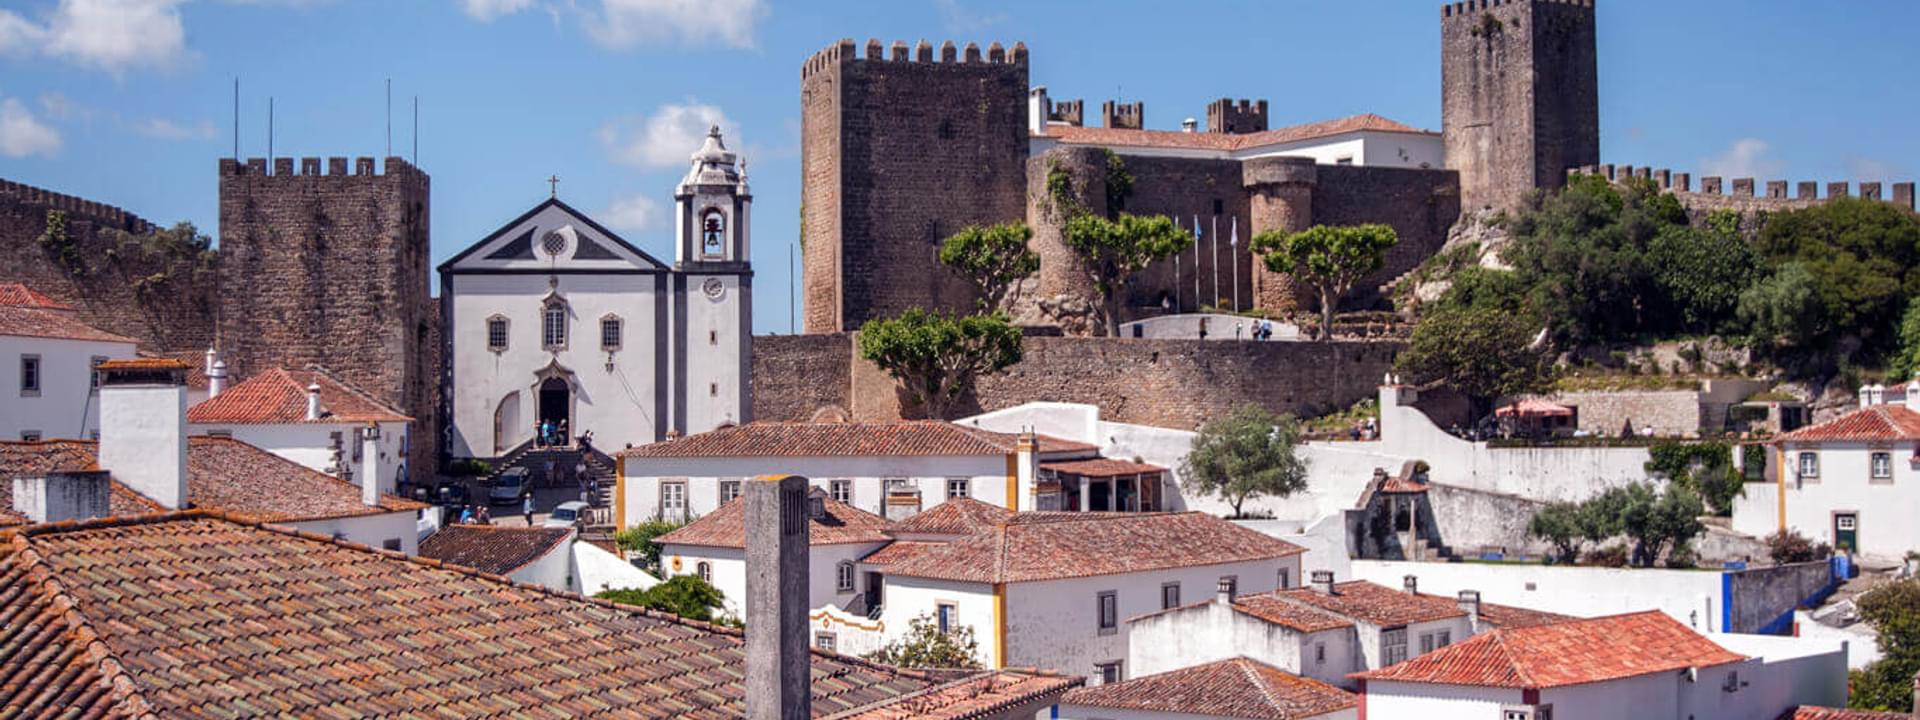 Todo nuevo en el Oeste de Portugal: 6 destinos increíbles para visitar en el Centro de Portugal